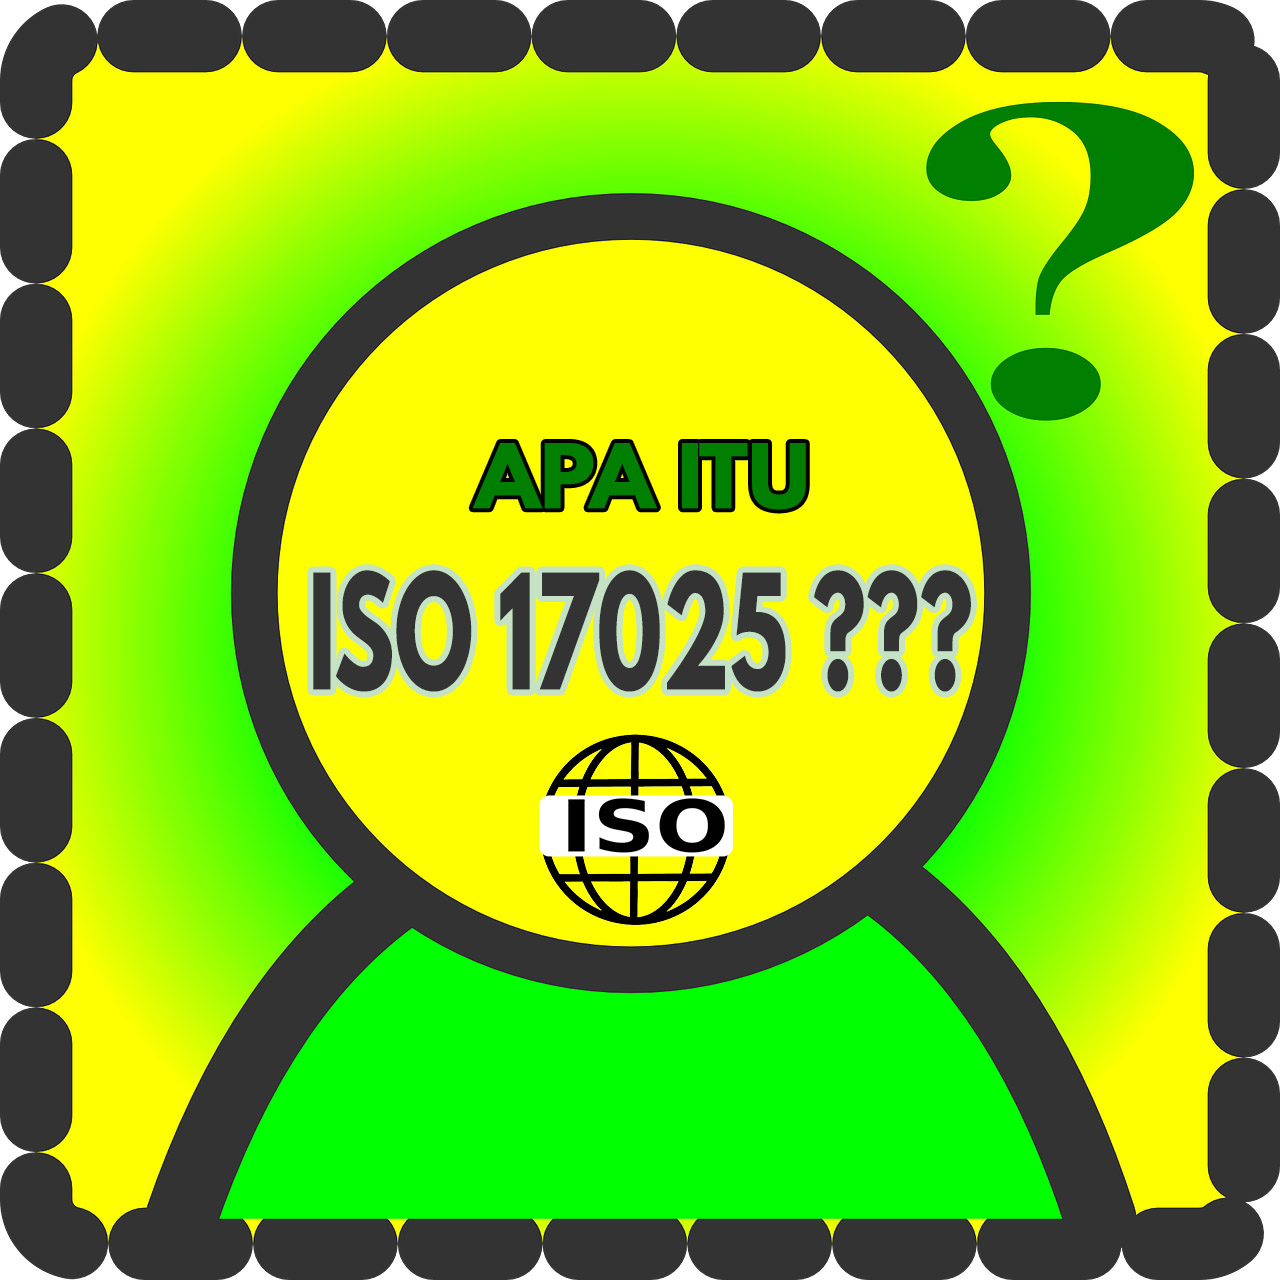 Gambar ISO 17025